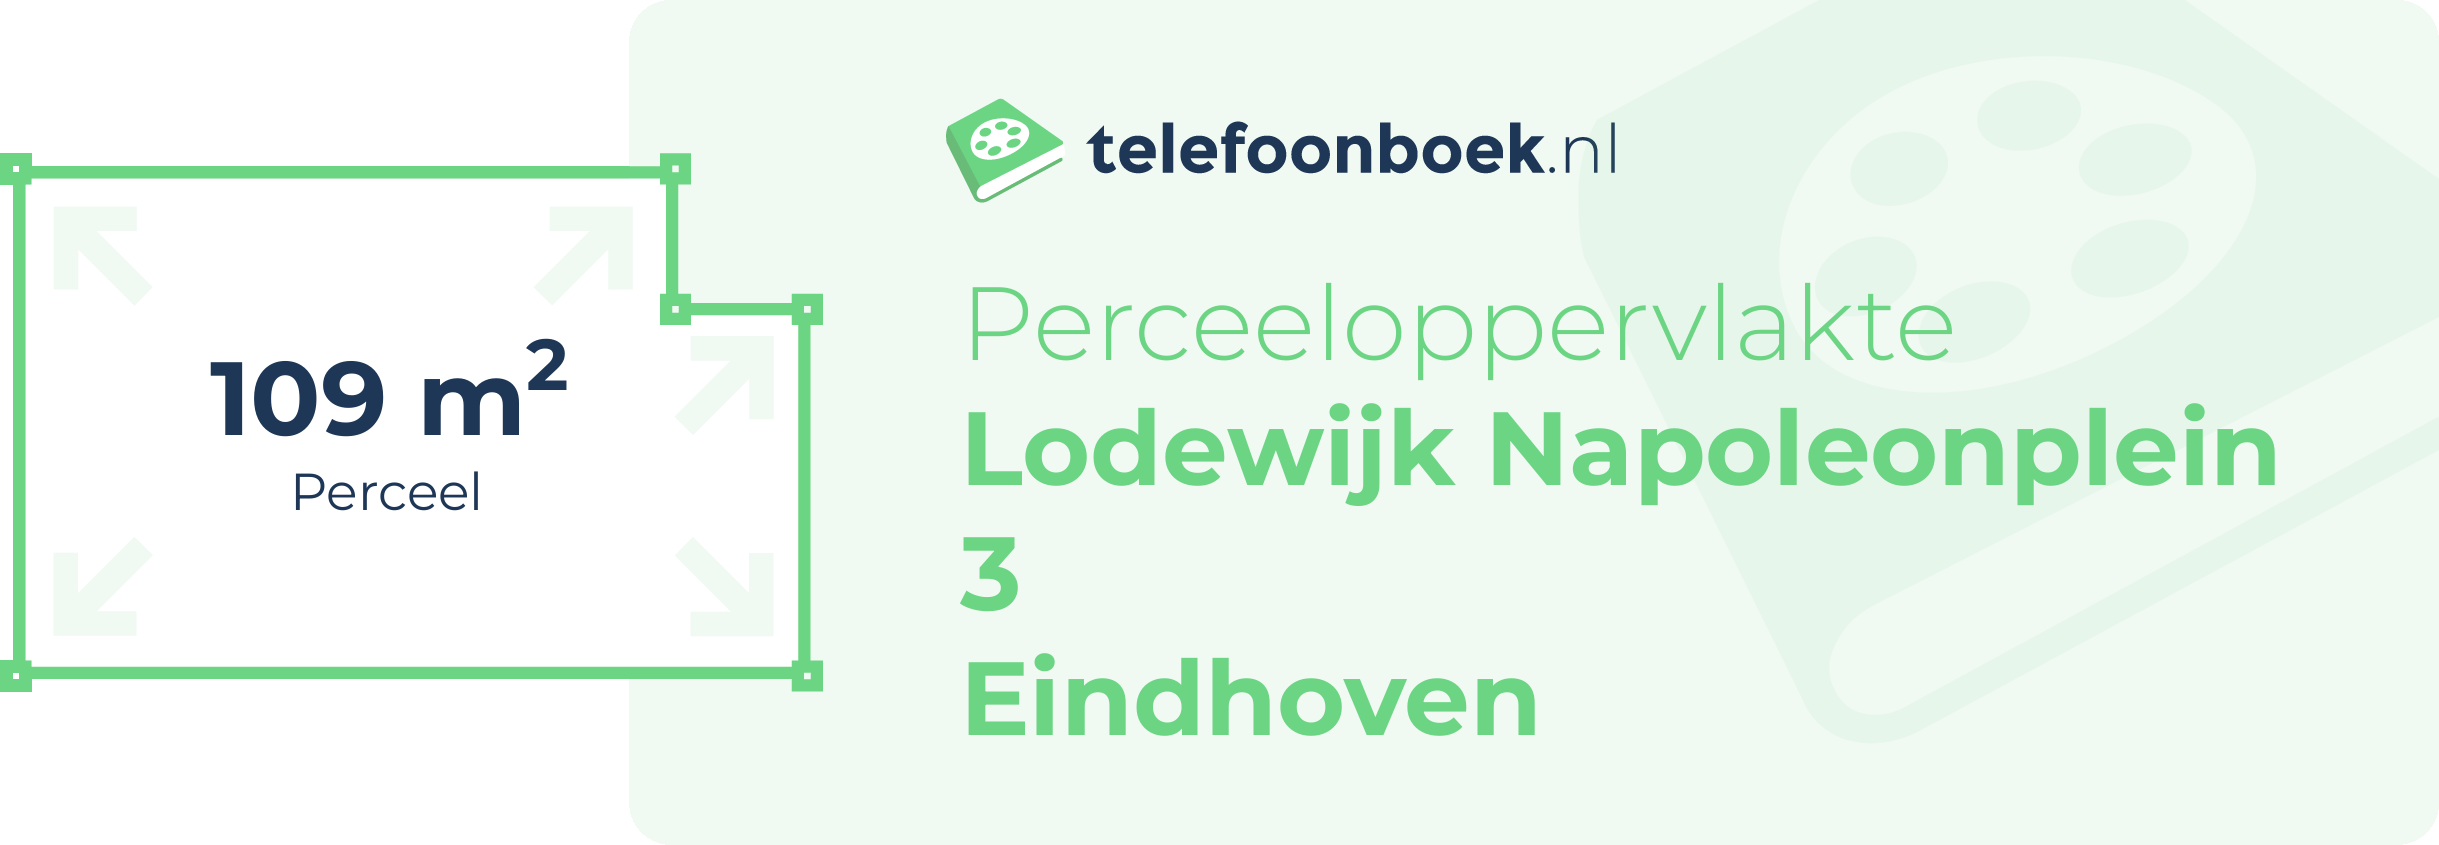 Perceeloppervlakte Lodewijk Napoleonplein 3 Eindhoven